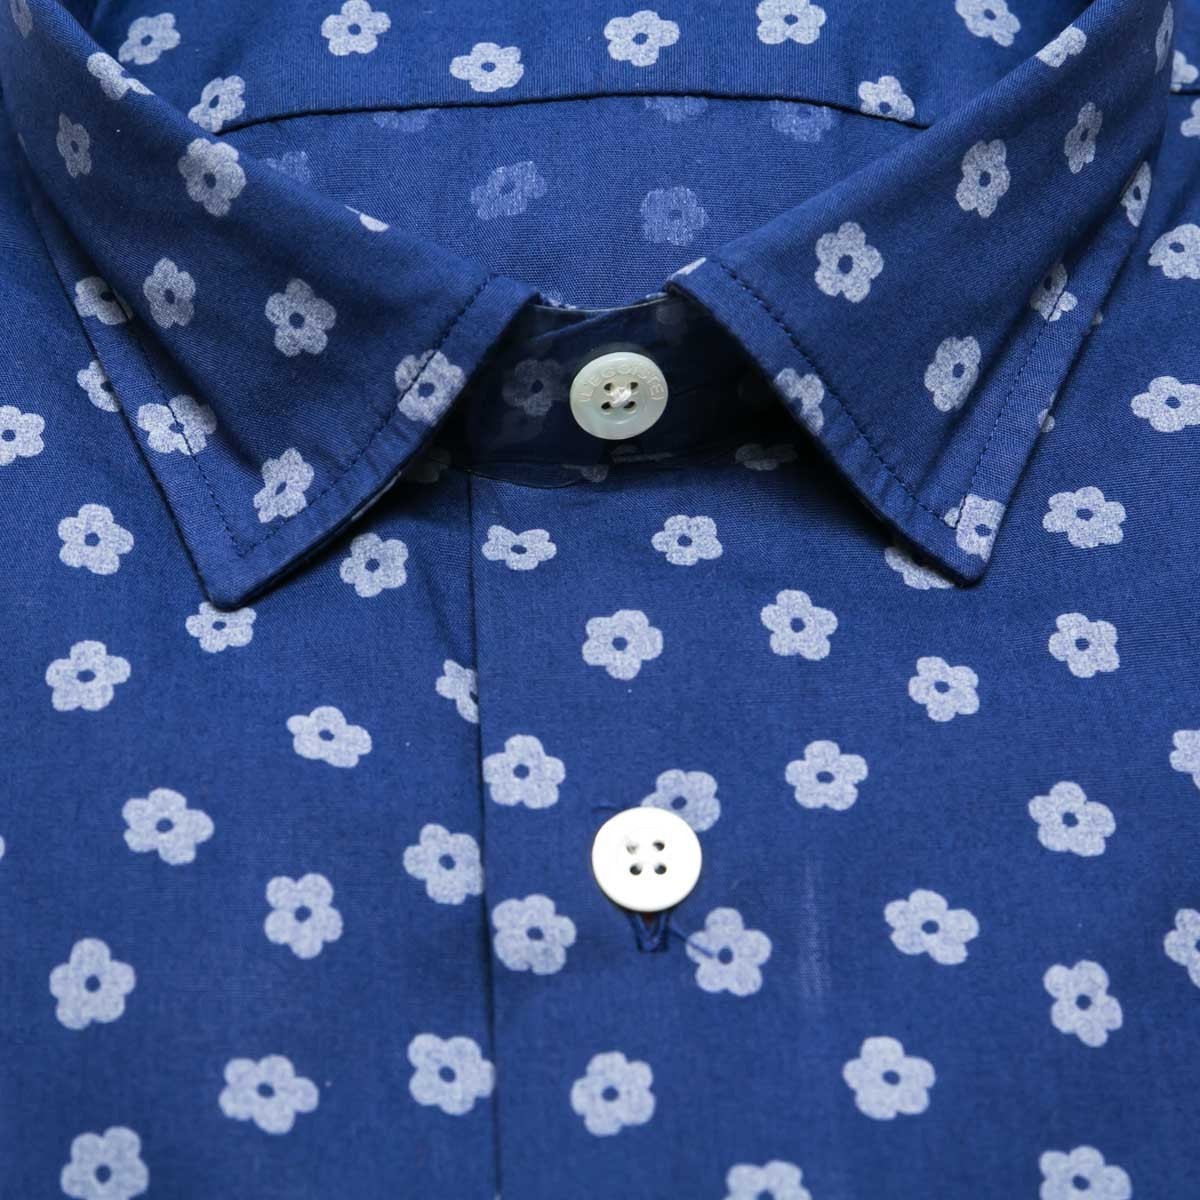 chemise-en-coton-bleue-a-fleurs-manches-longues-pour-homme-detail-tissu